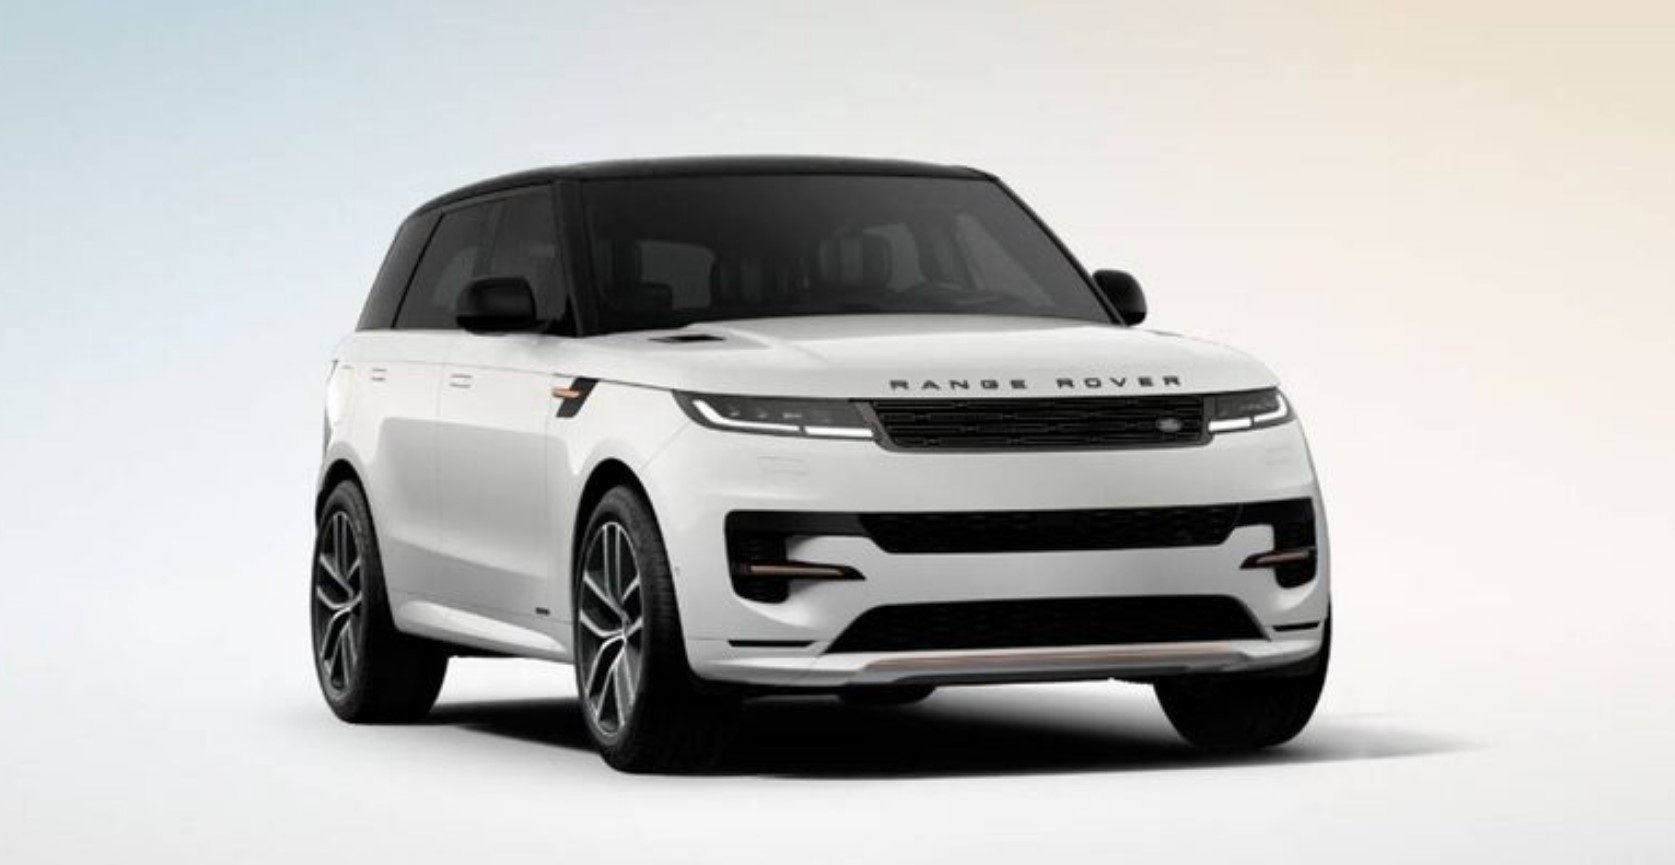 Взгляните на этот новый Range Rover Sport с производительным двигателем